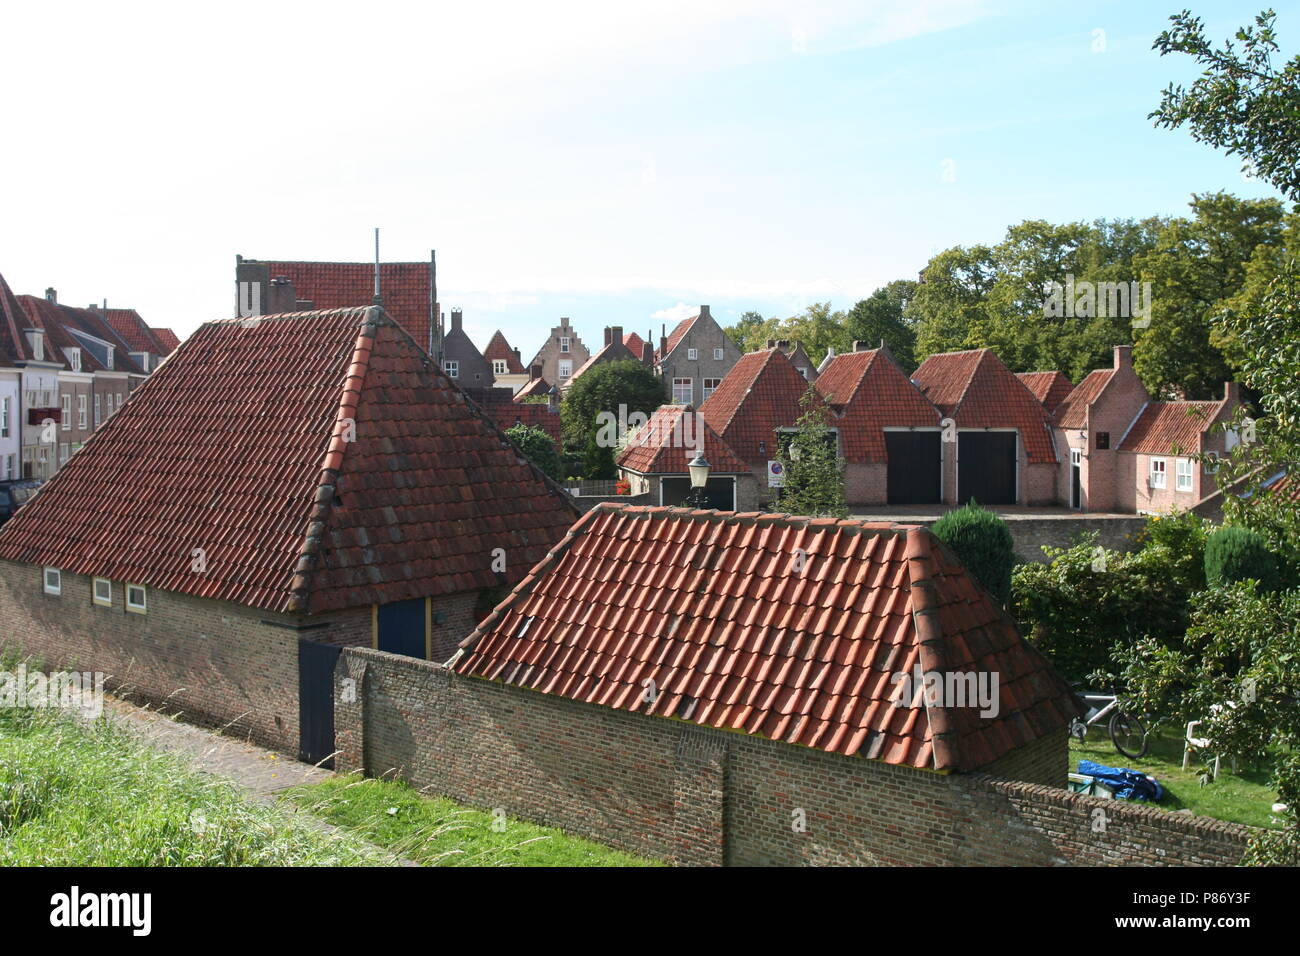 Het dorp Oud-Heusden; das Dorf Oud-Heusden Stockfoto